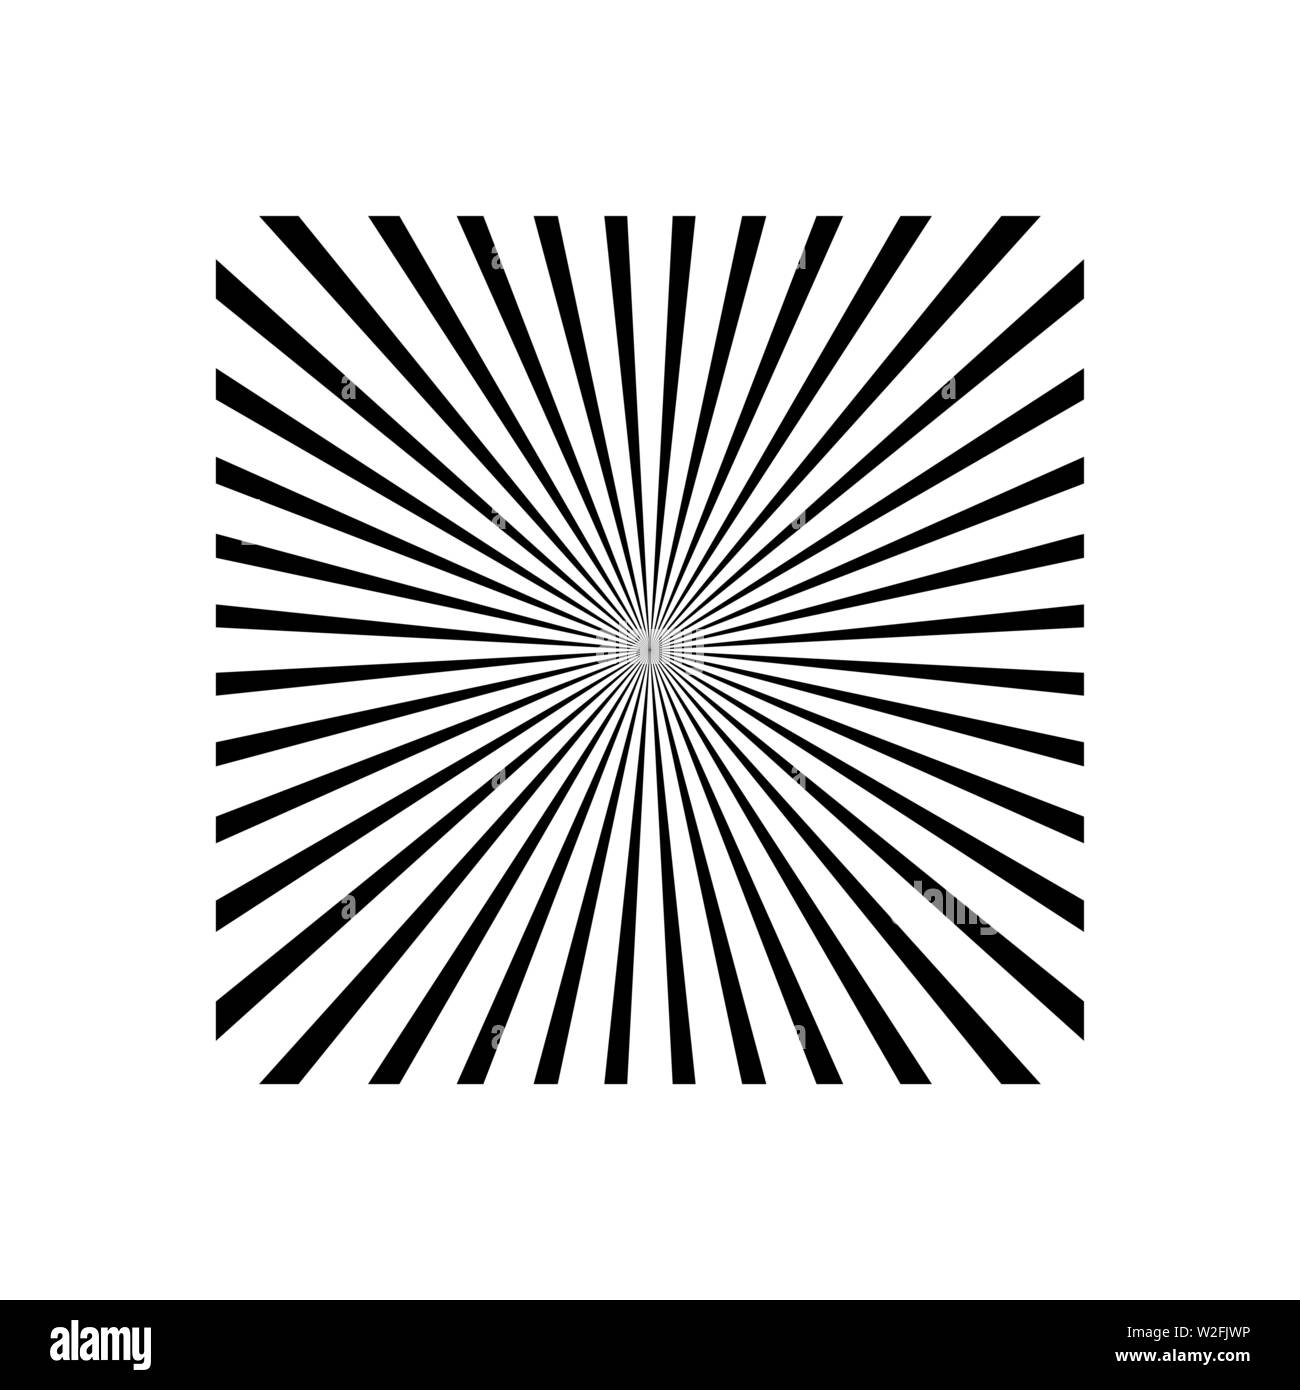 Schwarze und weiße radiale Linien optische Illusion Vektorgrafik Stock Vektor